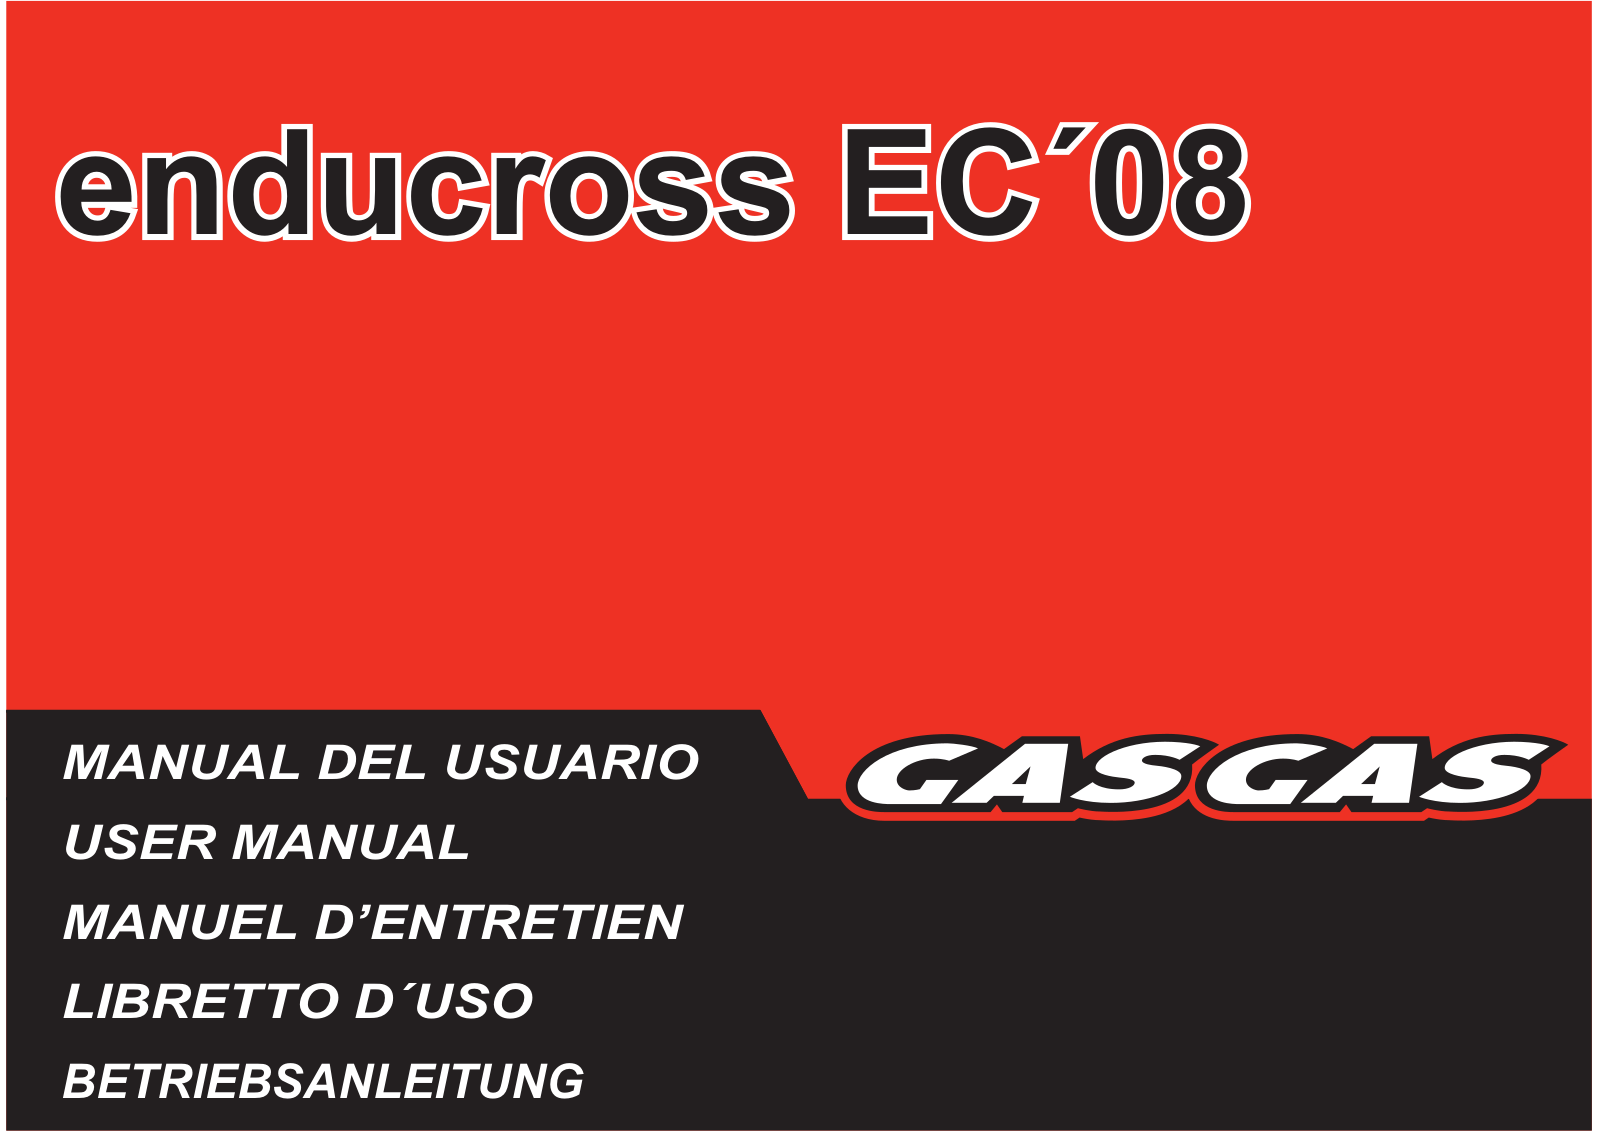 GasGas Enducross EC User Manual